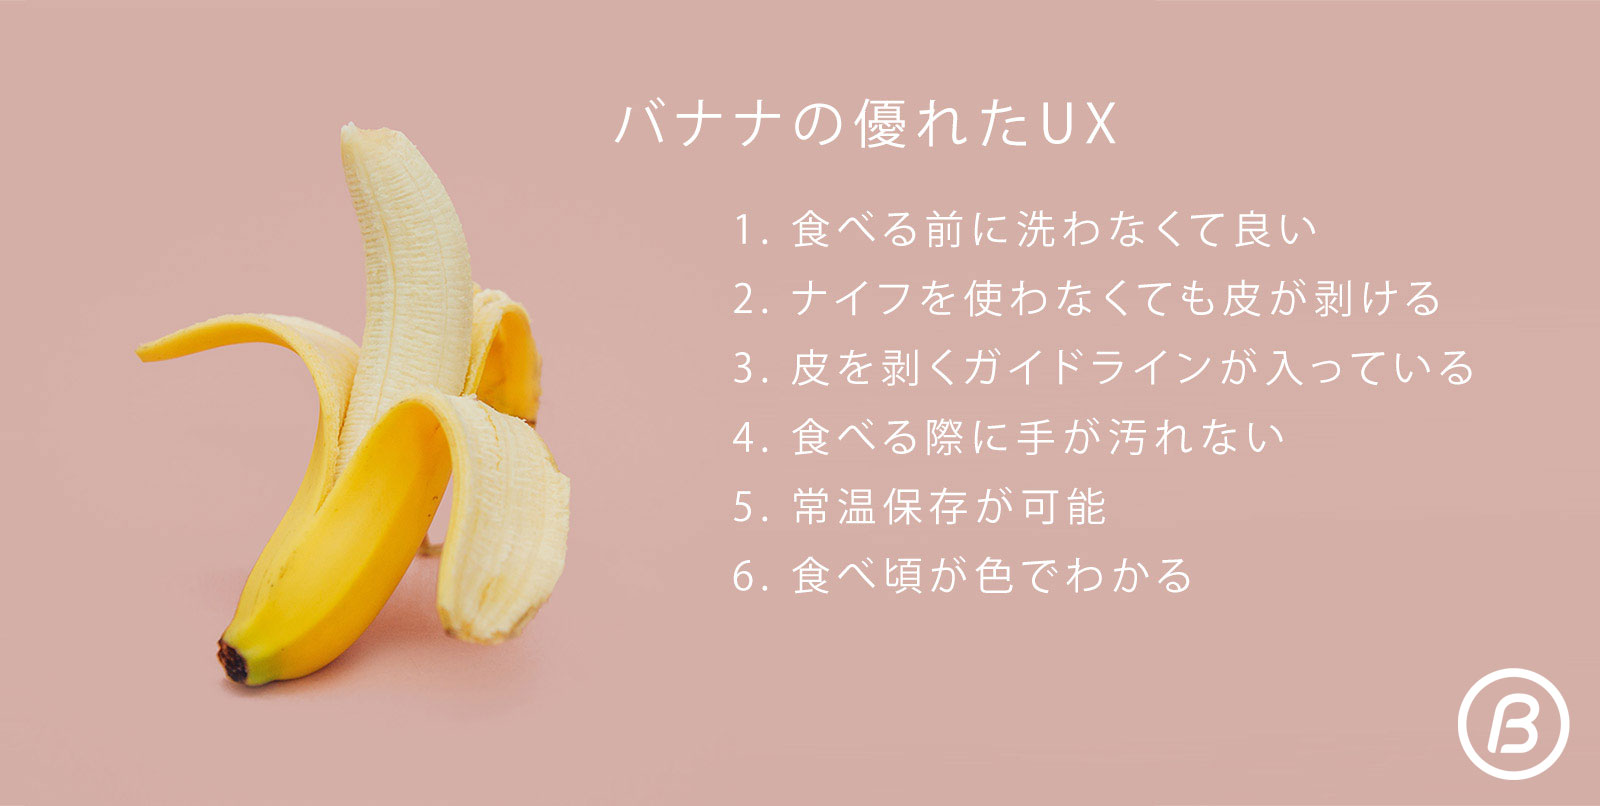 バナナが提供する最高のUX